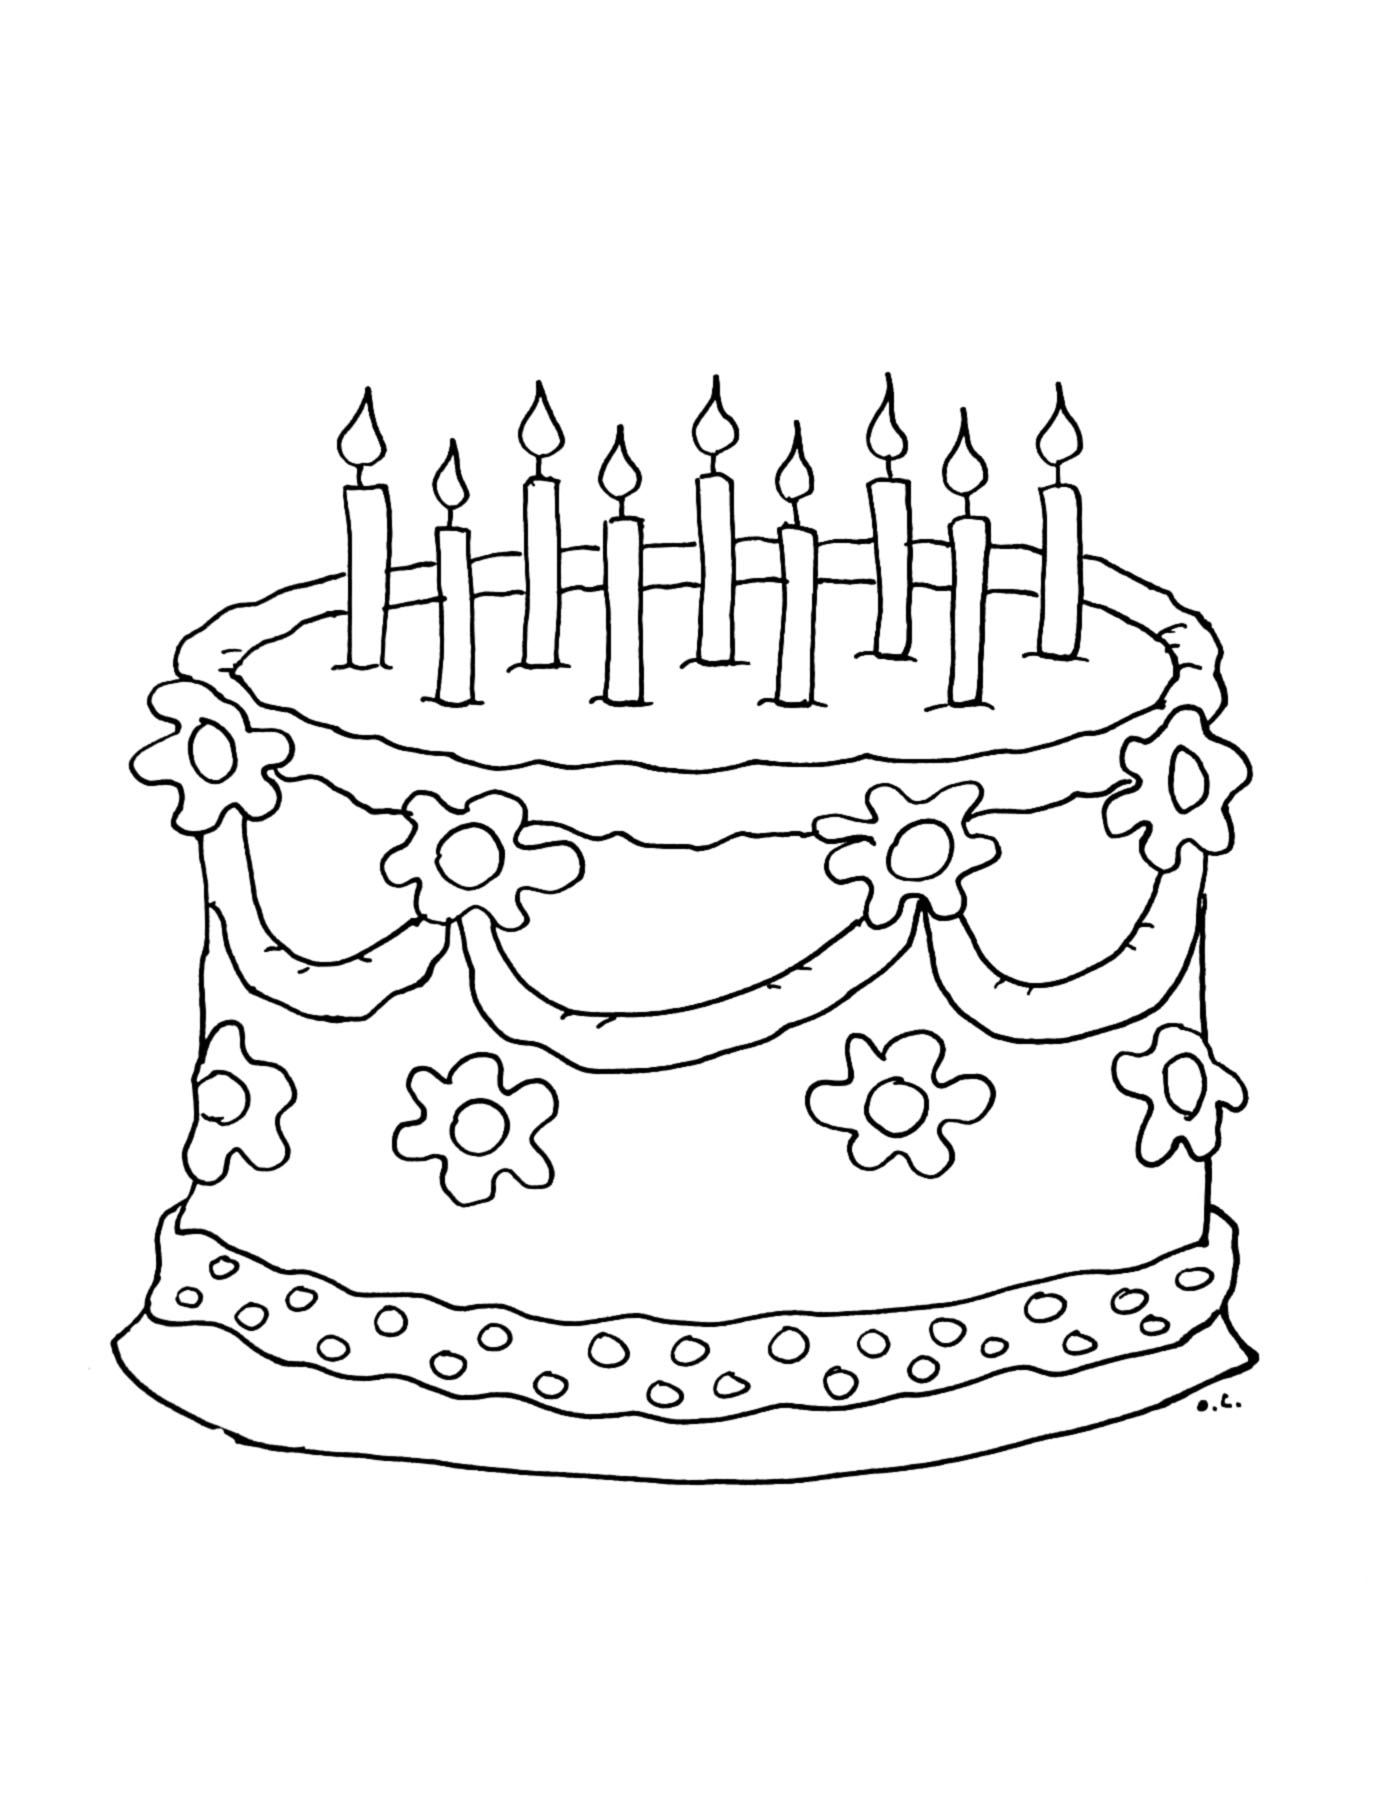 Colorear una gran tarta de cumpleaños con 9 velas para soplar